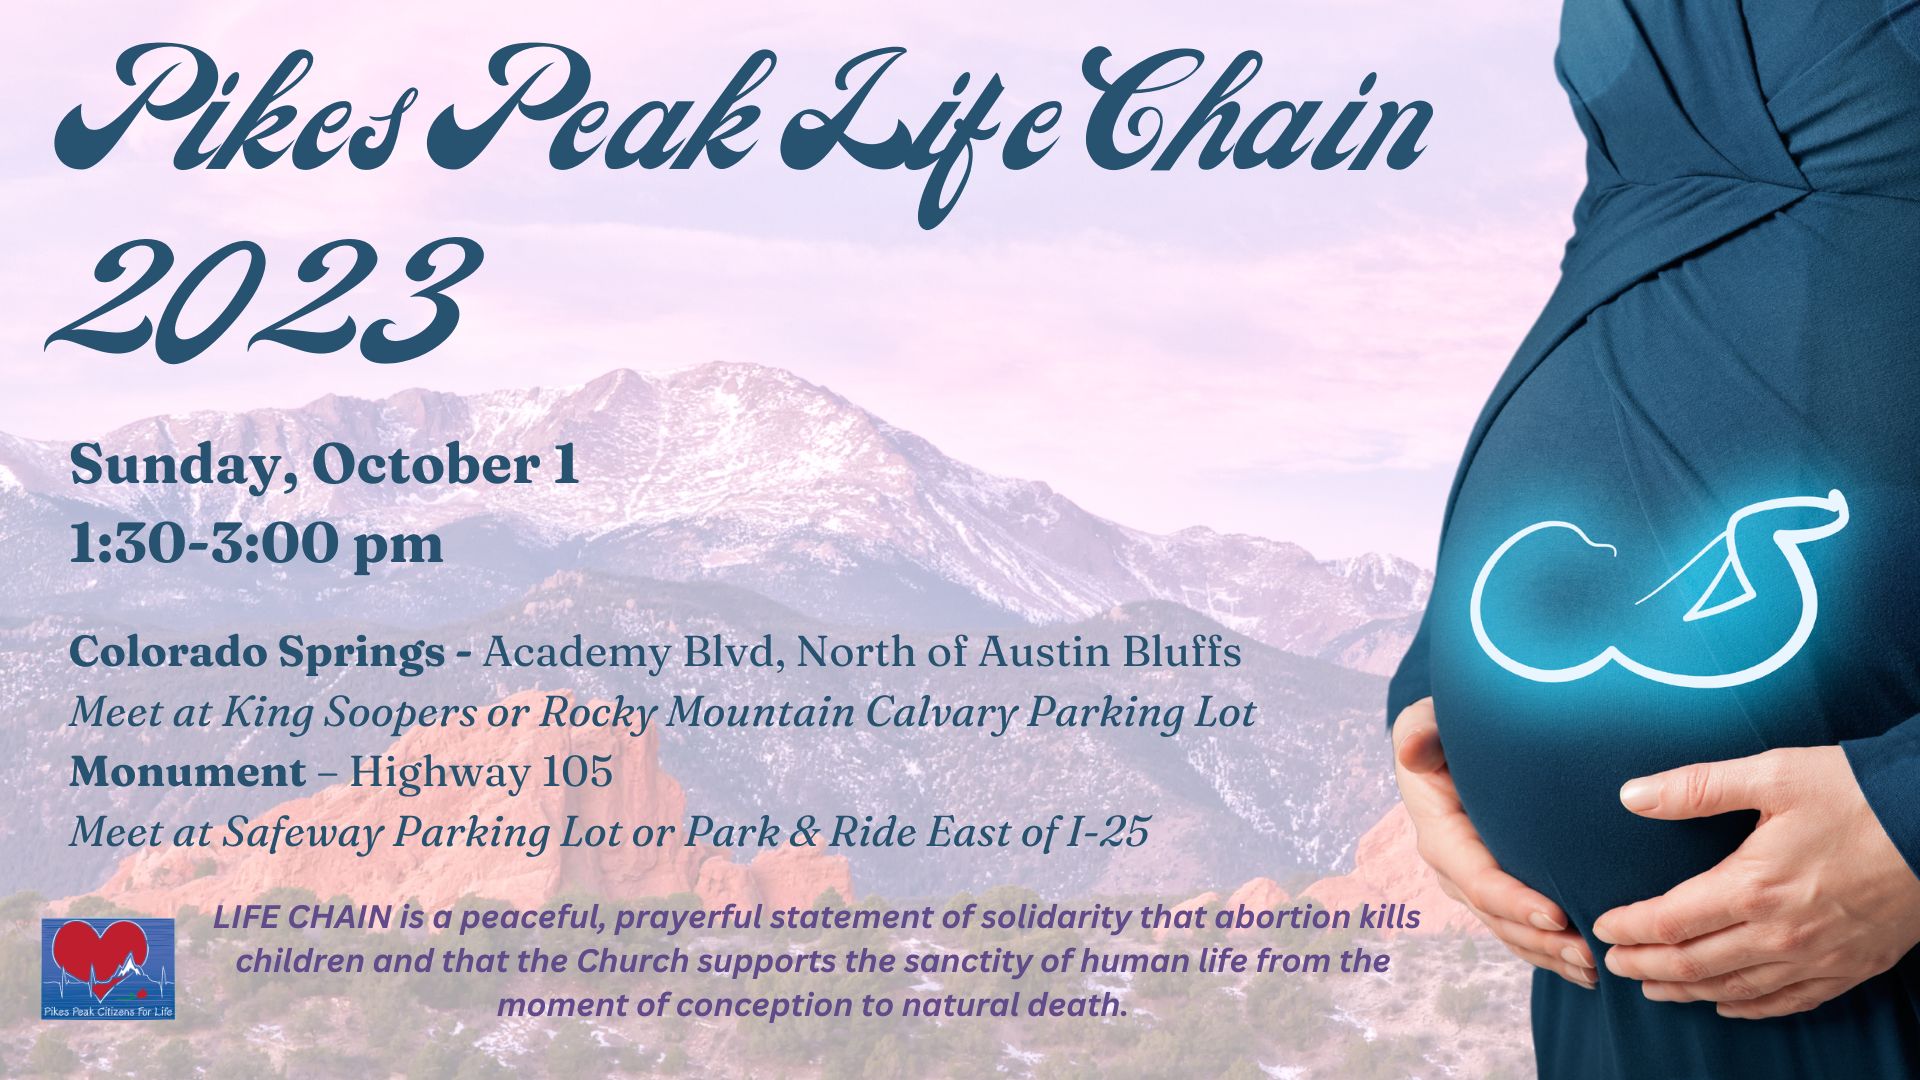 Pikes Peak Life Chain